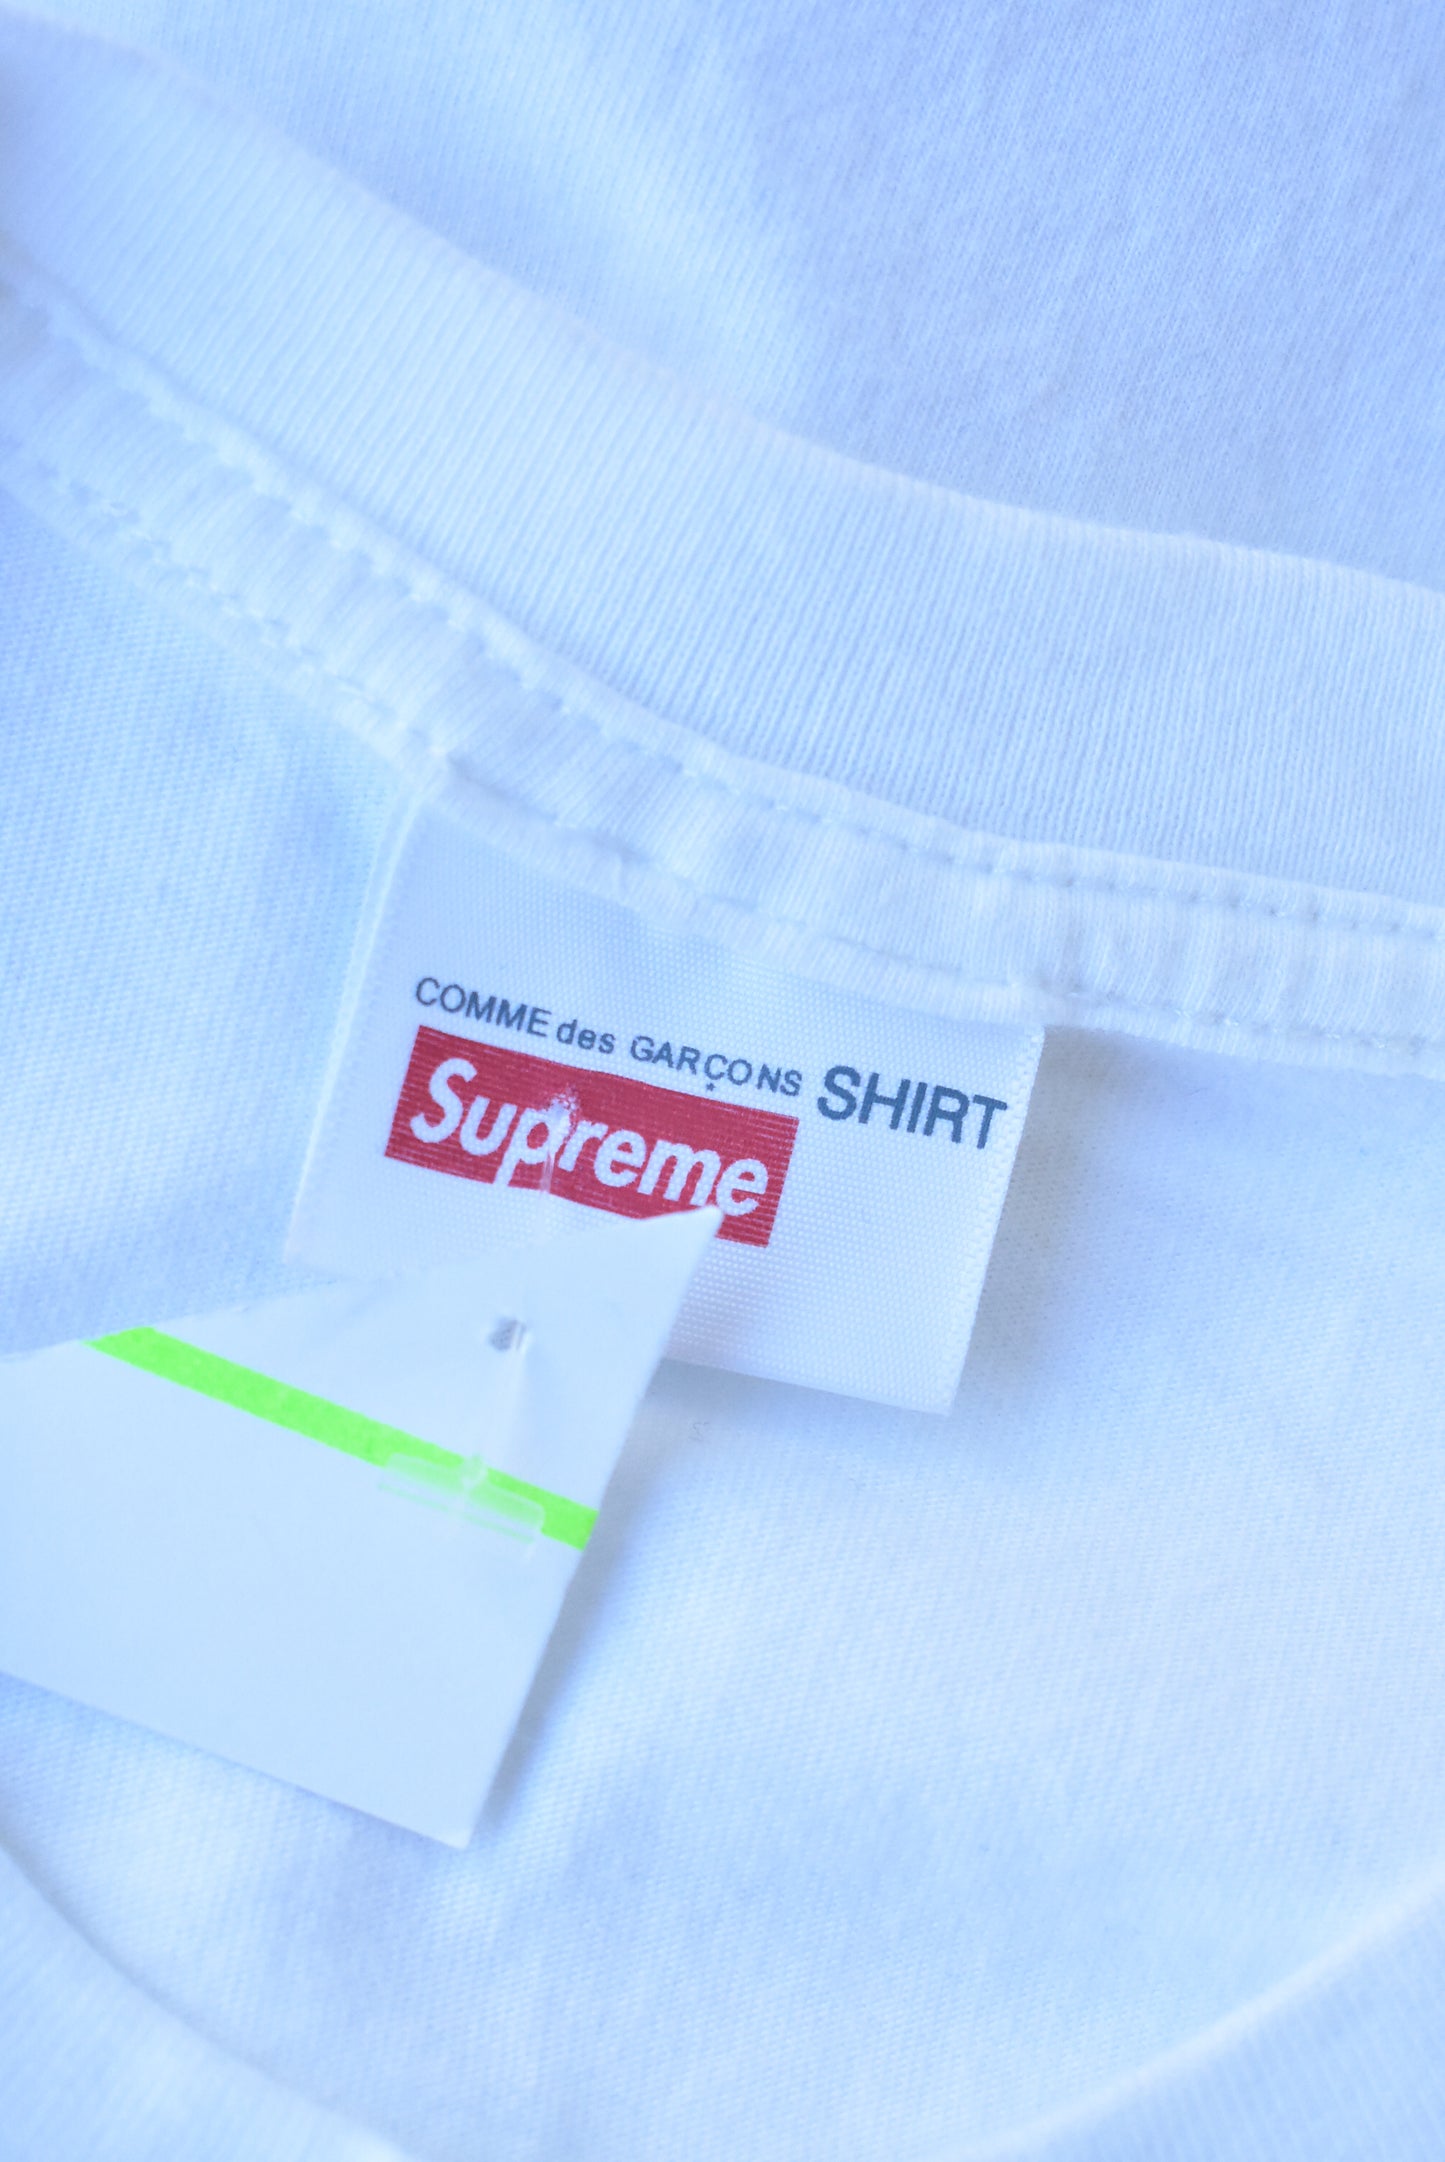 Supreme x Comme des garcons t-shirt, S